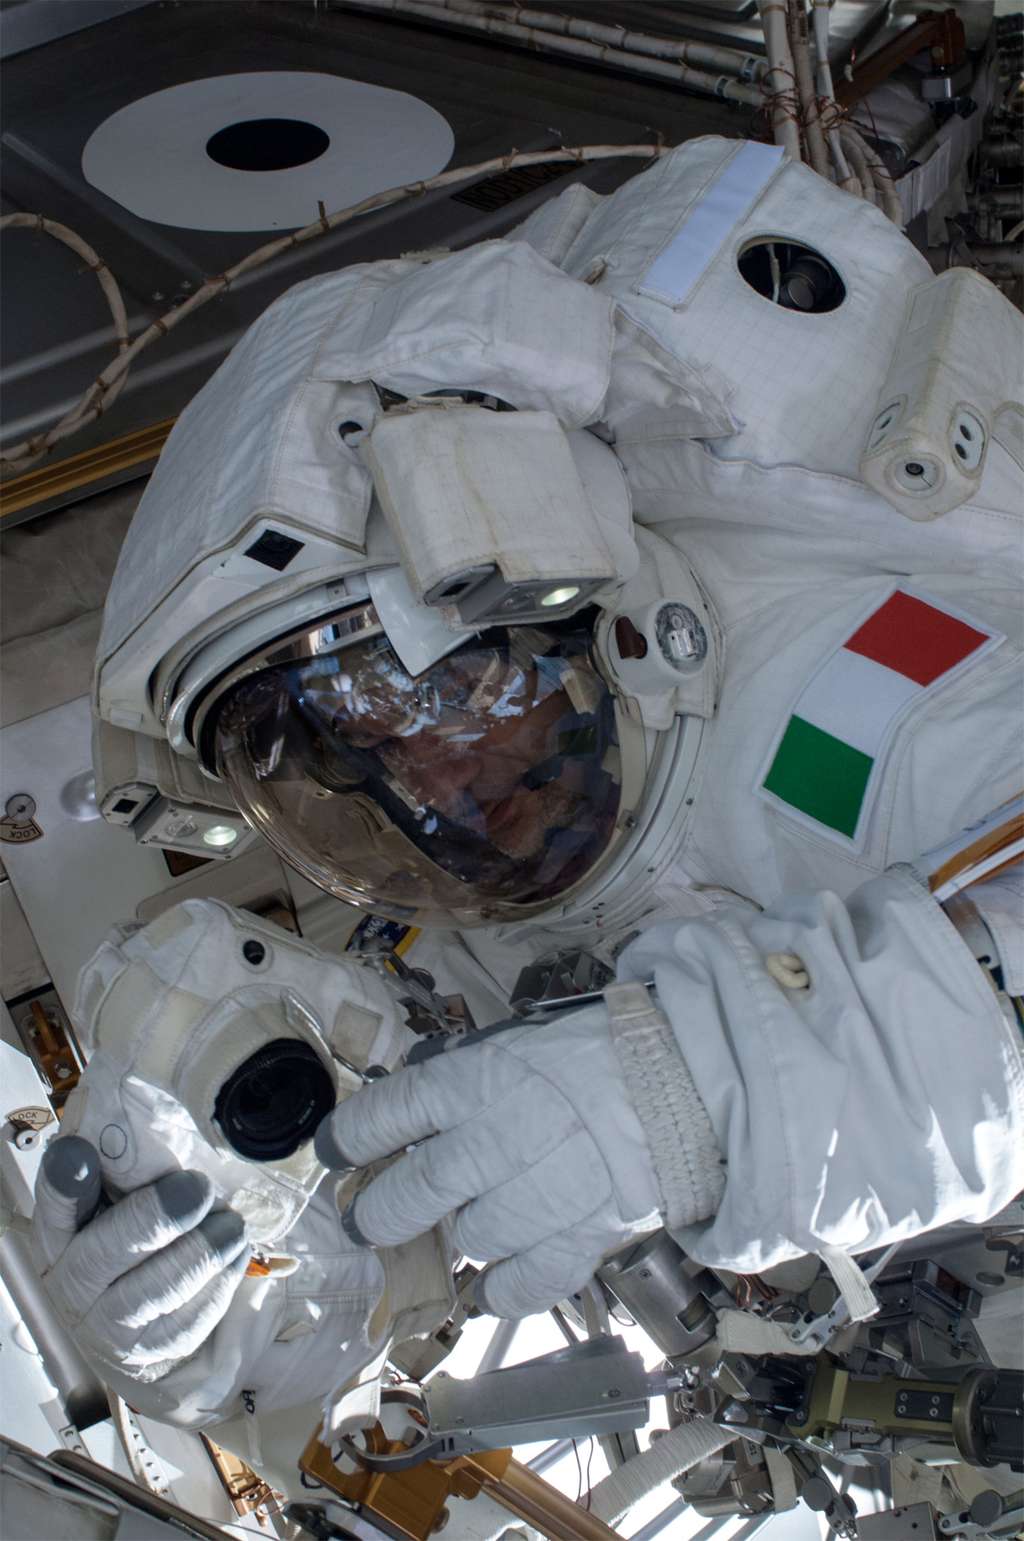 Luca Parmitano pendant la première heure de sa sortie dans l'espace avant qu'une fuite d'eau ne se déclare et le contraigne à rentrer dans l'ISS. © Nasa